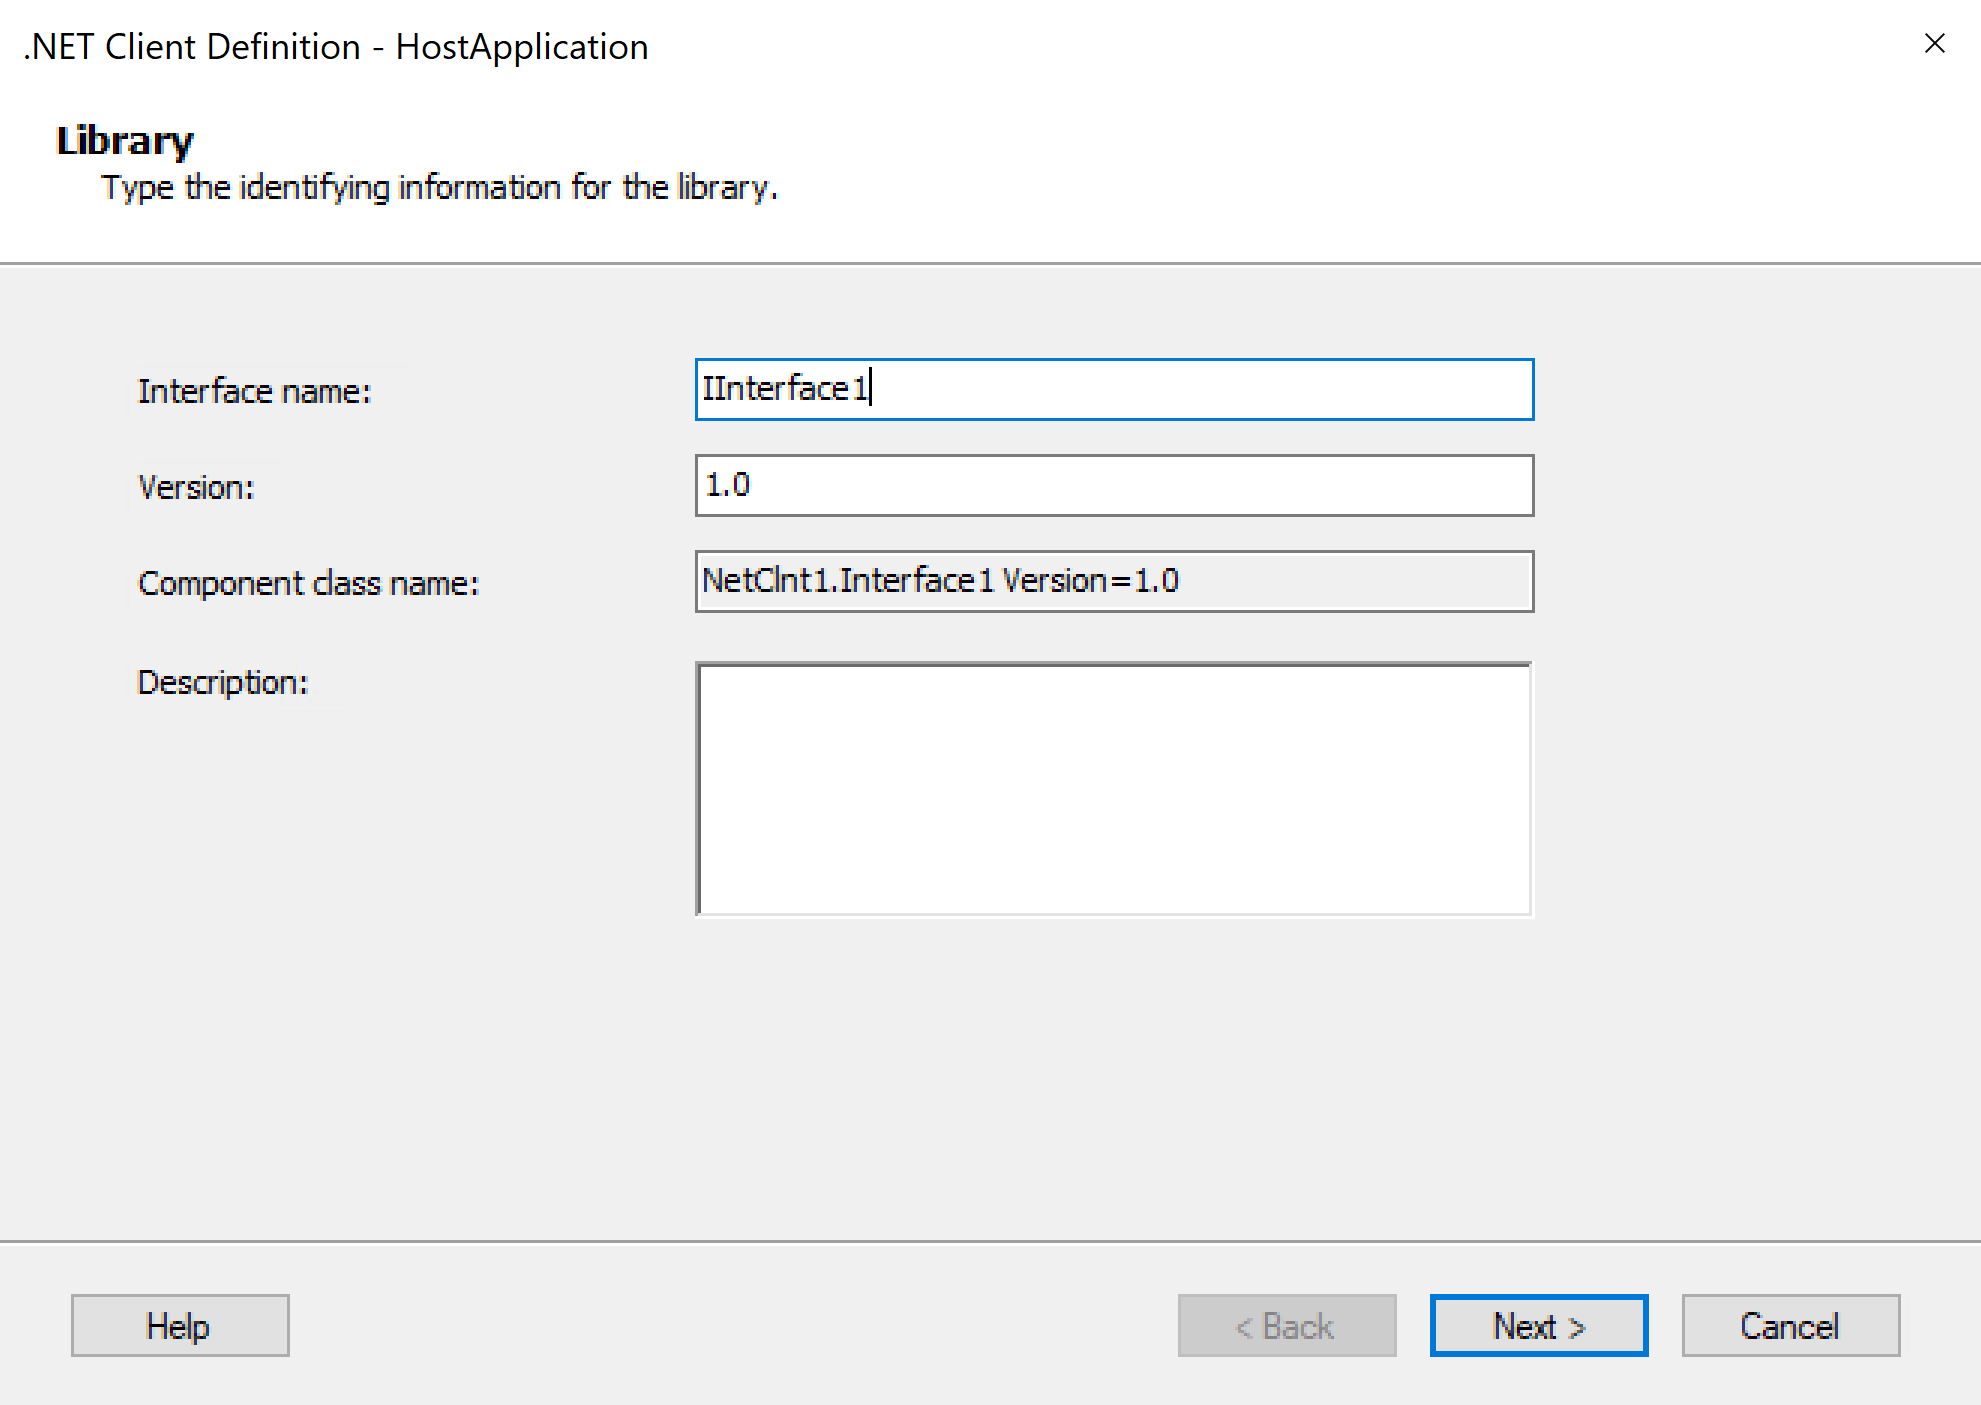 Captura de pantalla que muestra el asistente para definición de cliente .NET y el cuadro Biblioteca.